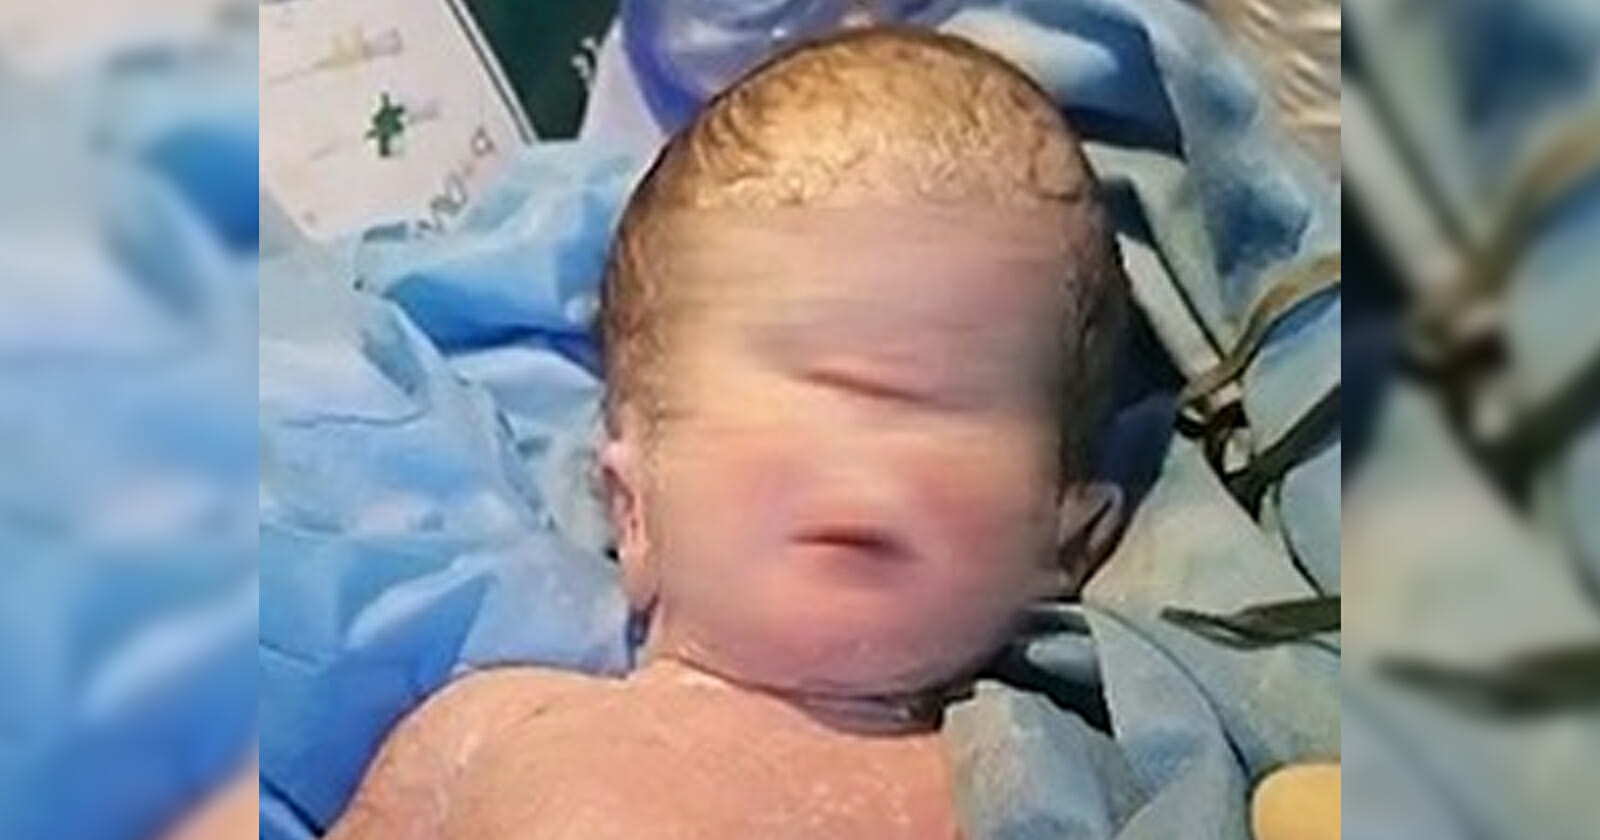 ولادة طفل بعين واحدة في العراق watanserb.com